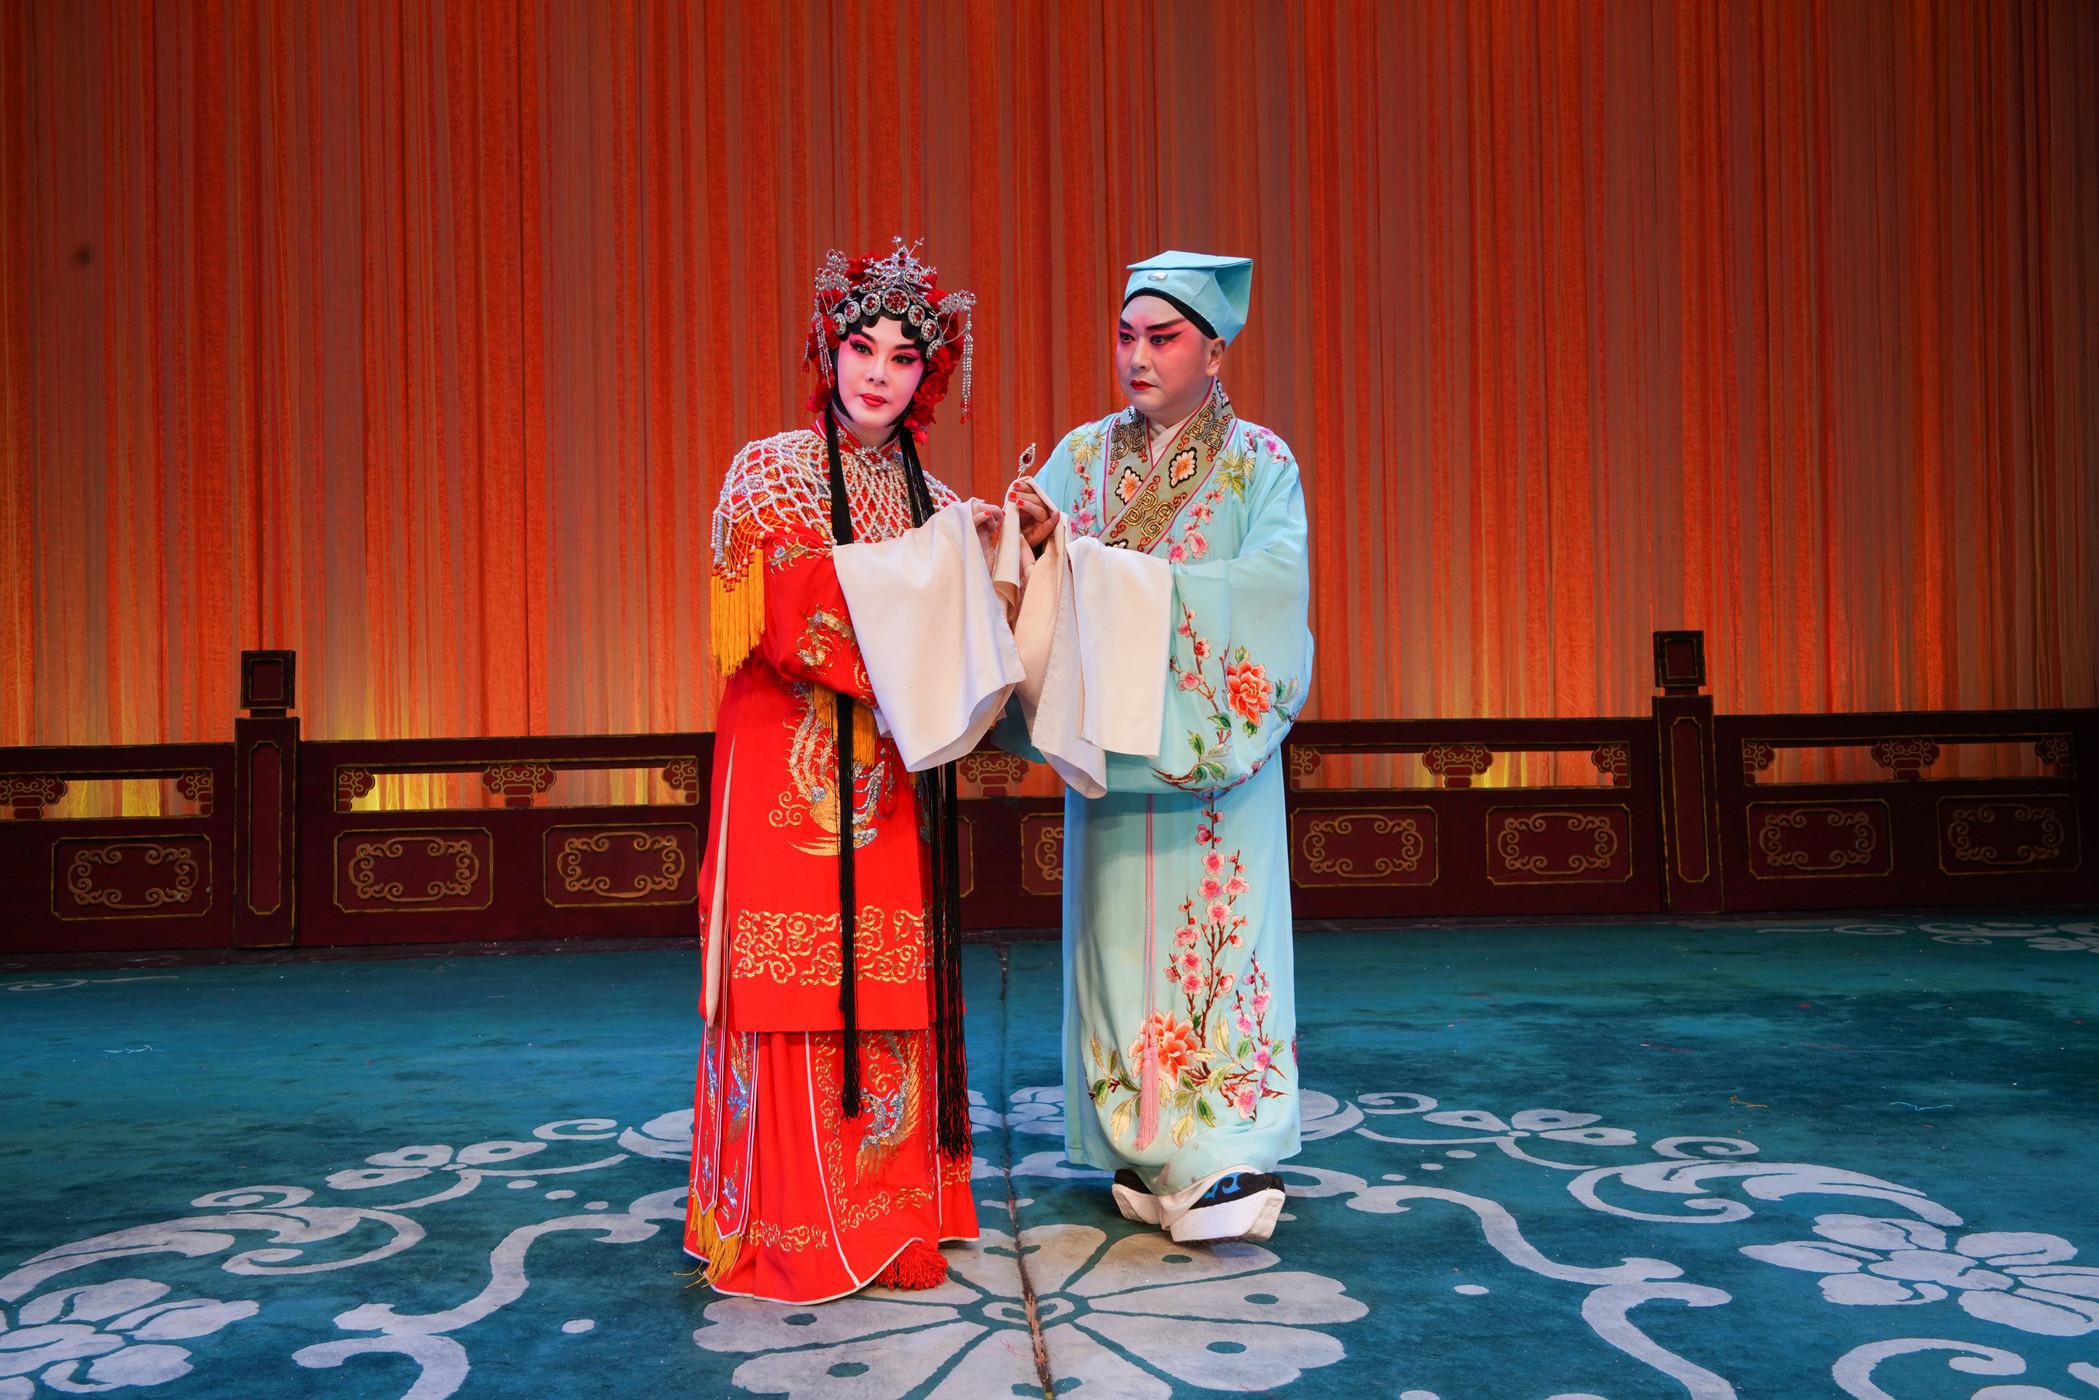 武汉汉剧院首度应康乐及文化事务署之邀七月参与今年的中国戏曲节。图为《二度梅》剧照。